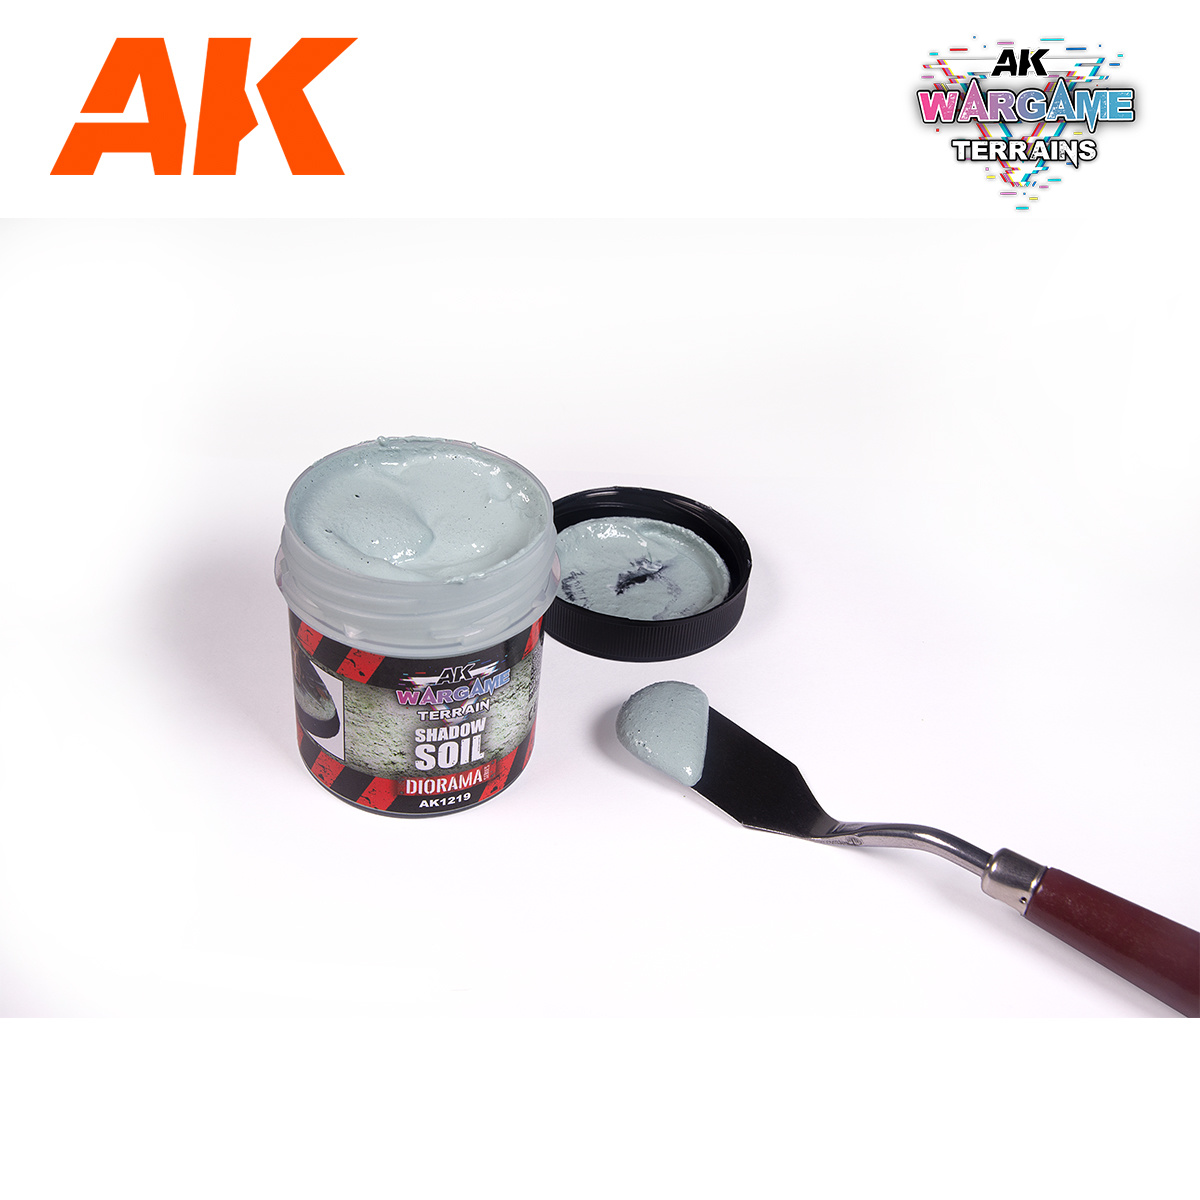 AK-Interactive Shadow Soil - 100ml - AK-Interactive - AK-1219